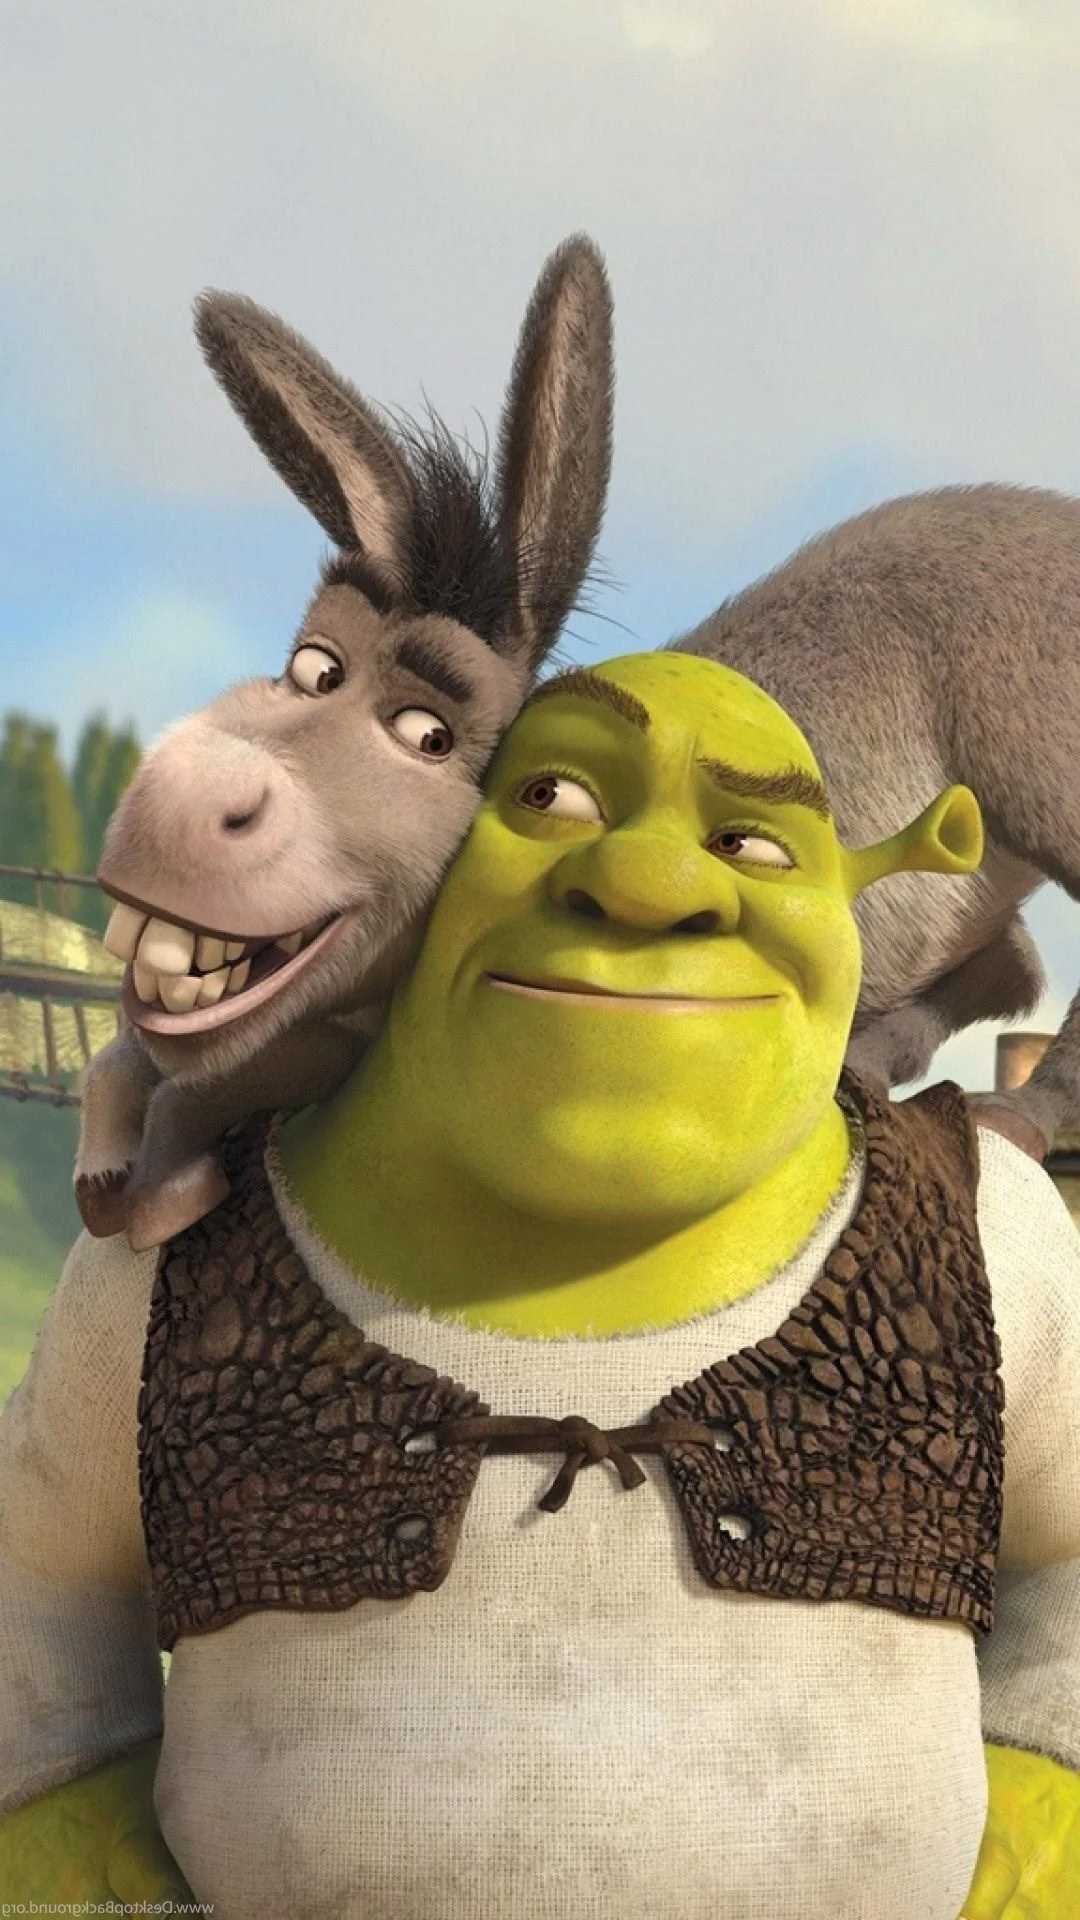 Shrek and donkey from the movie - Shrek